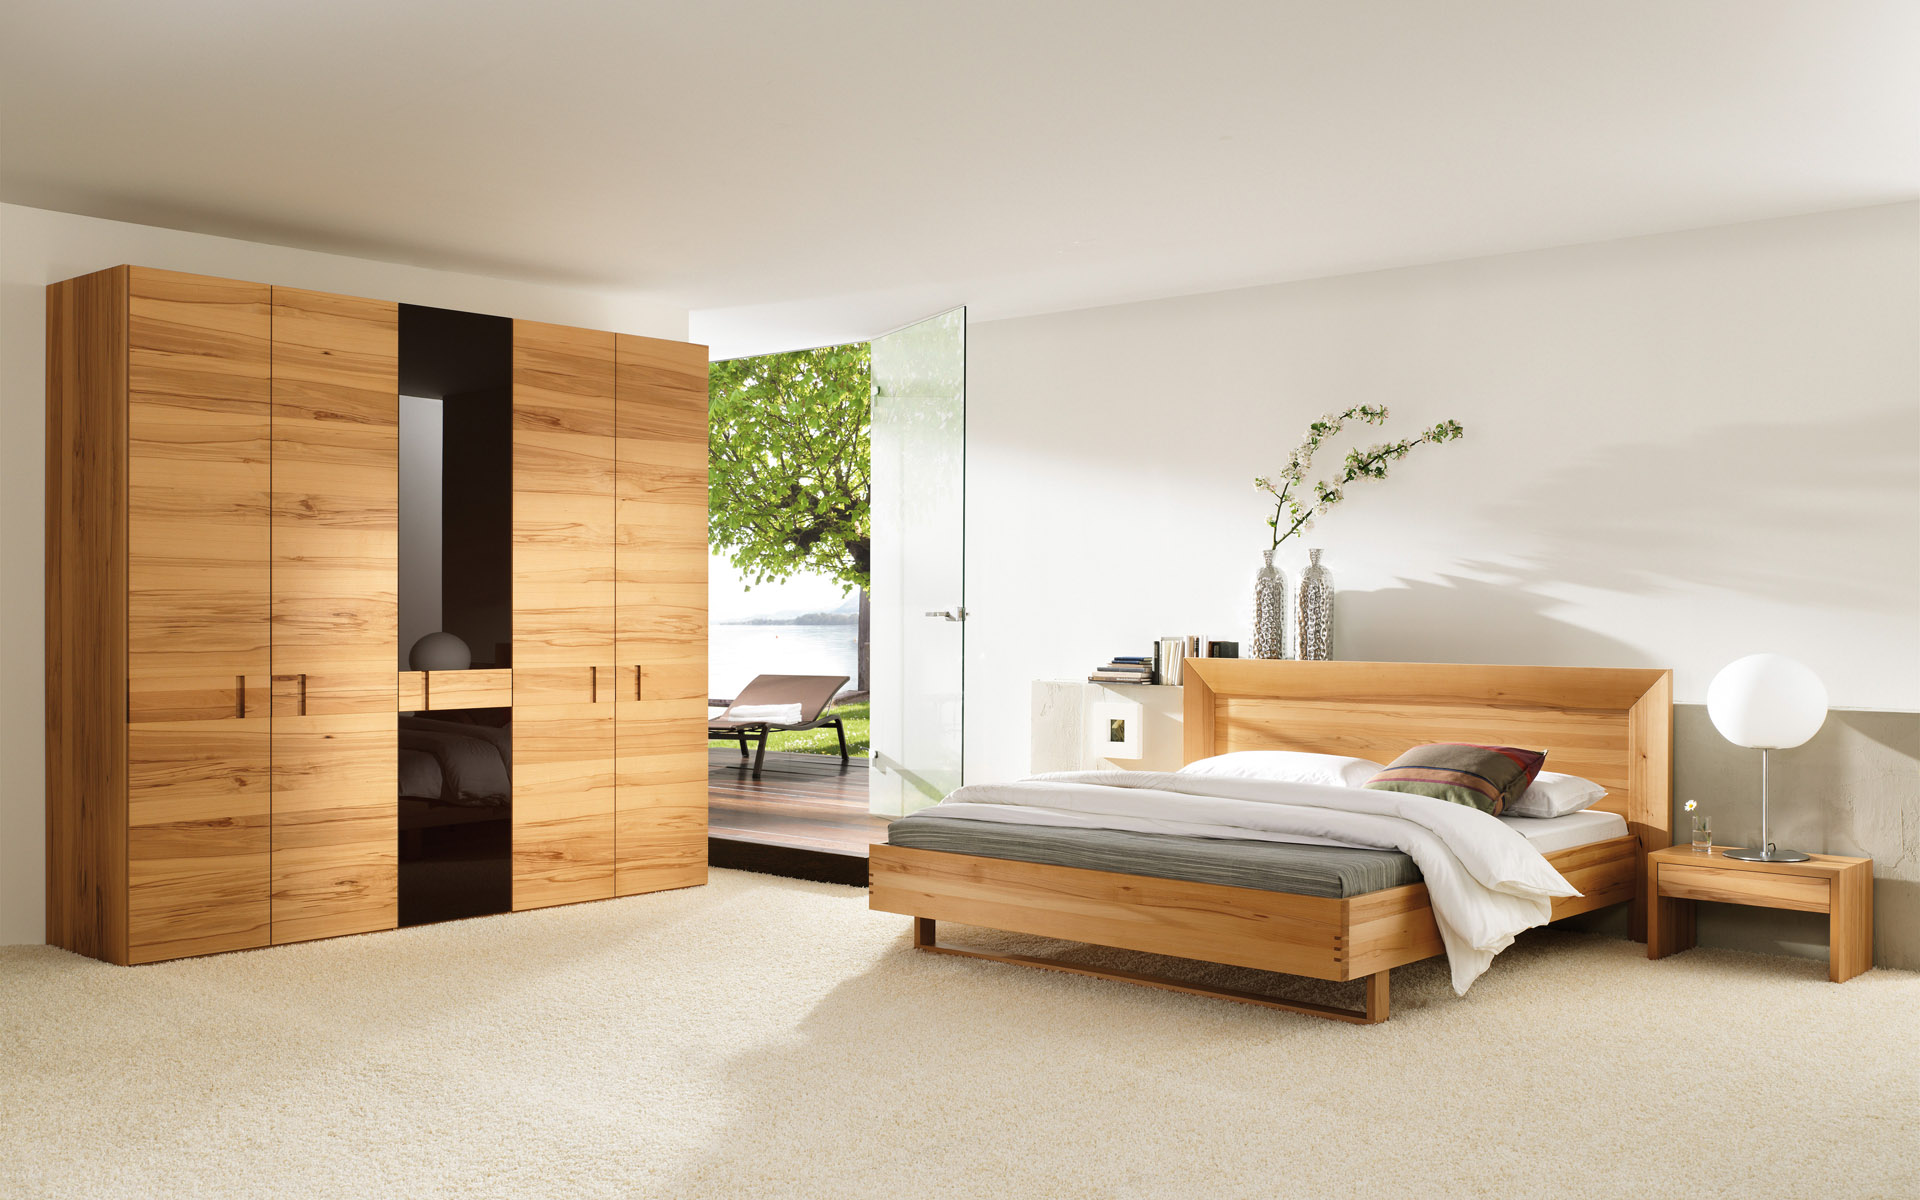 Đặt một bàn đầu giường gỗ sồi để làm điểm nhấn và tăng tính thẩm mỹ